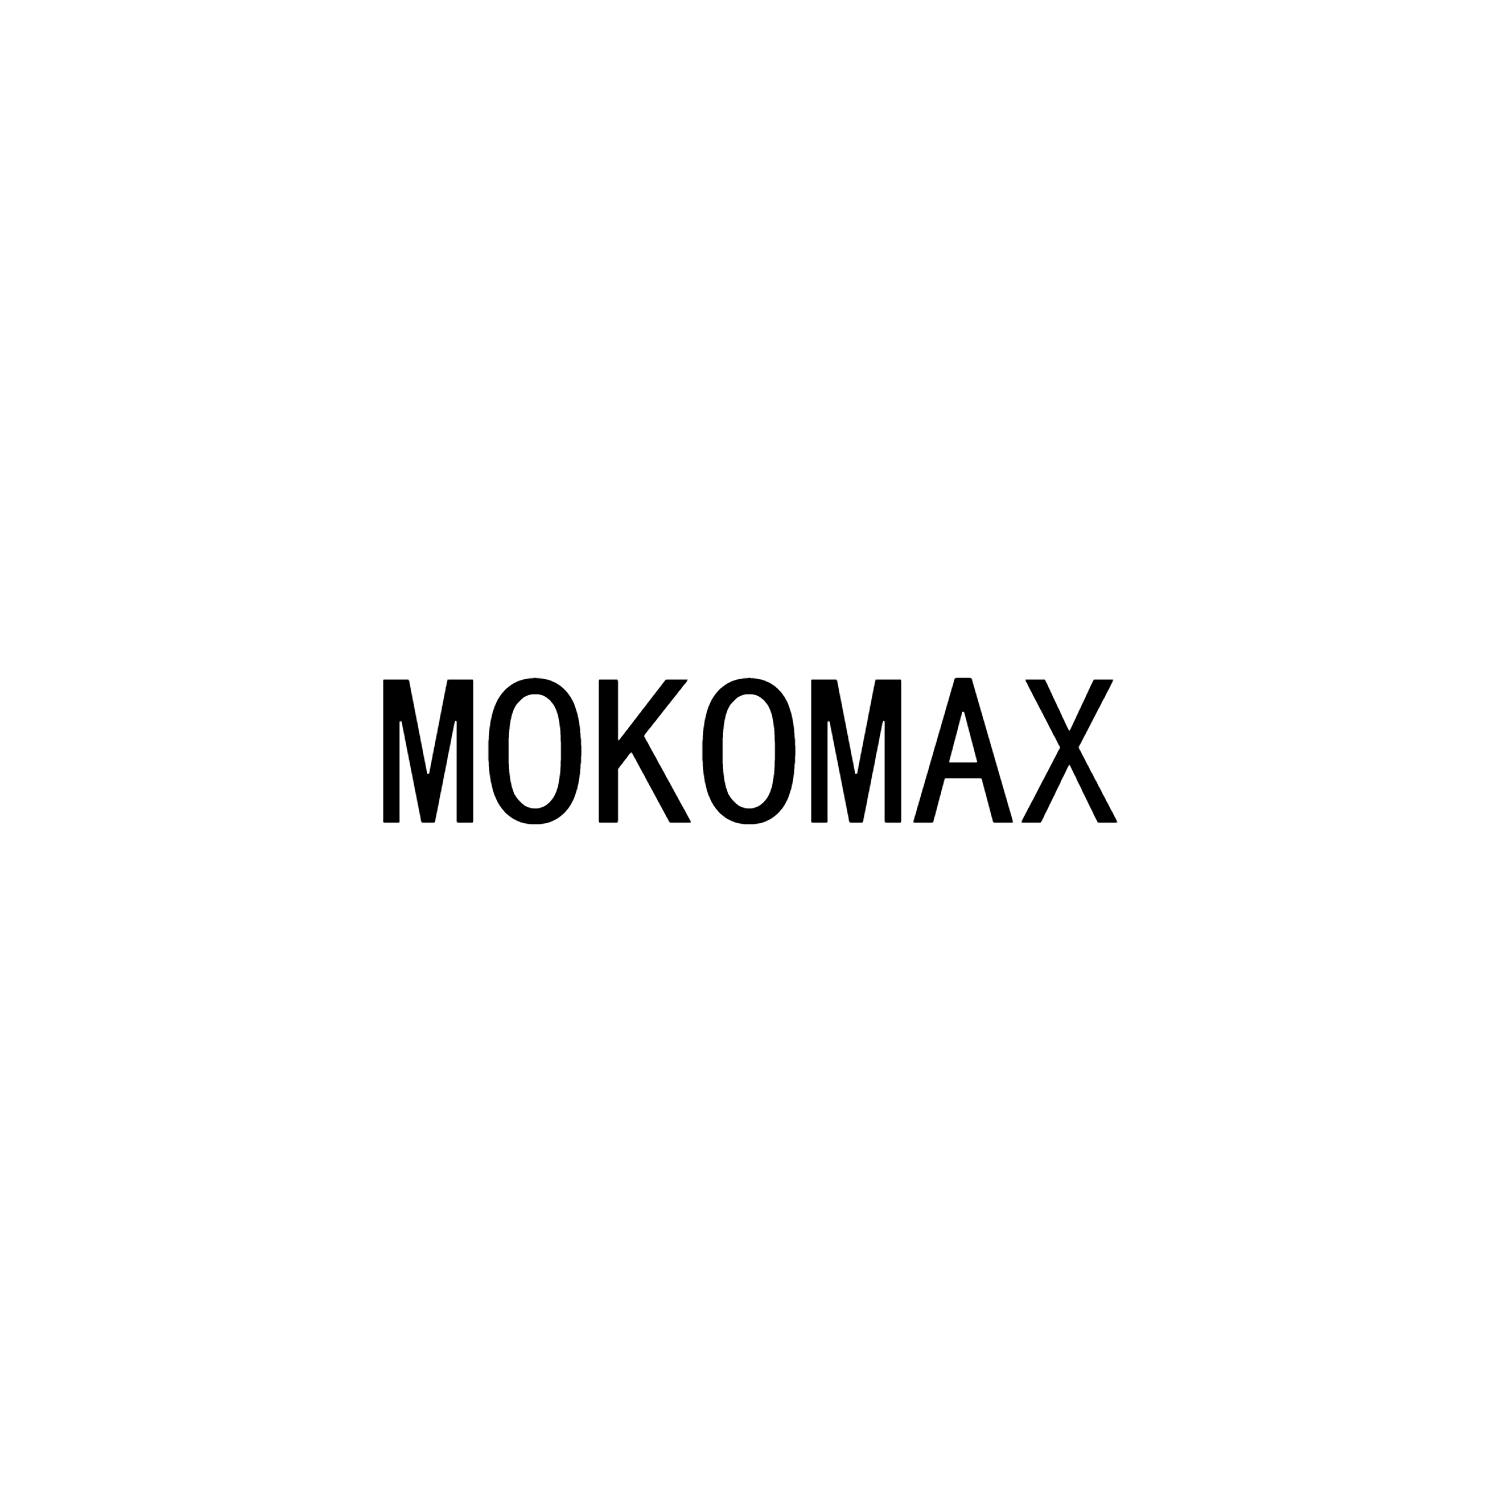 mokomax